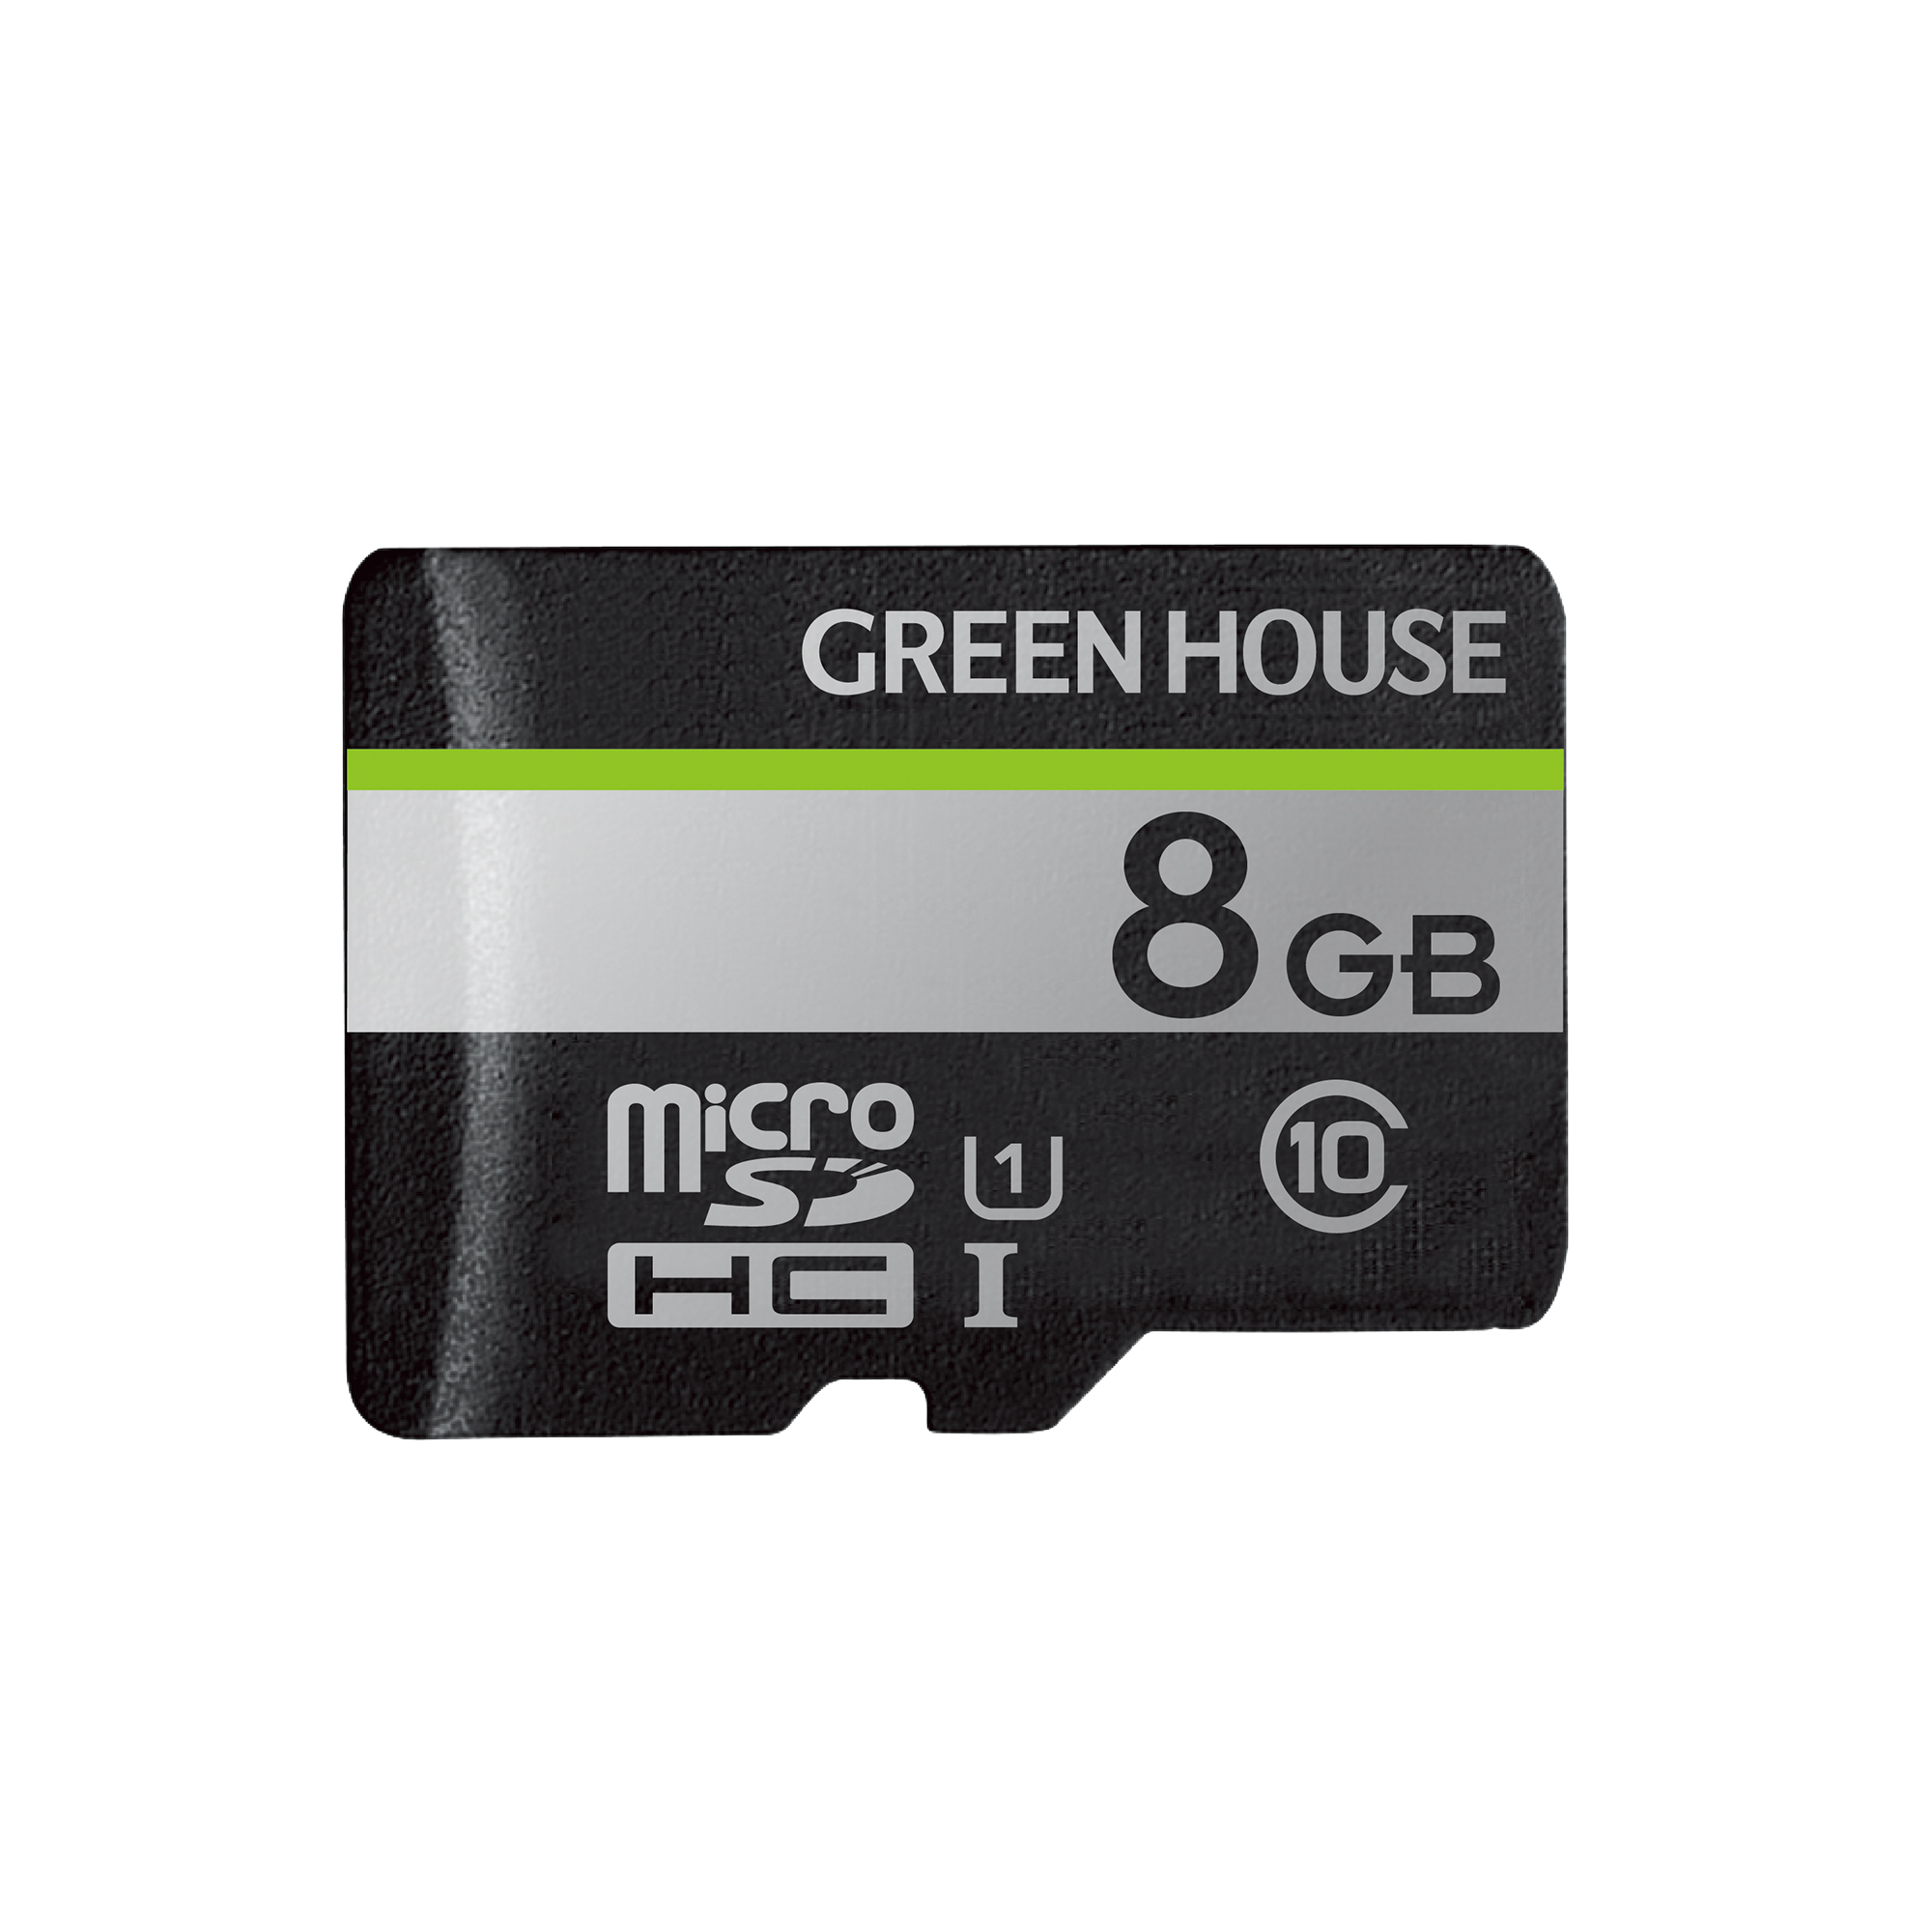 新しいスタイル グリーンハウス ハードディスクに匹敵する容量 512GB